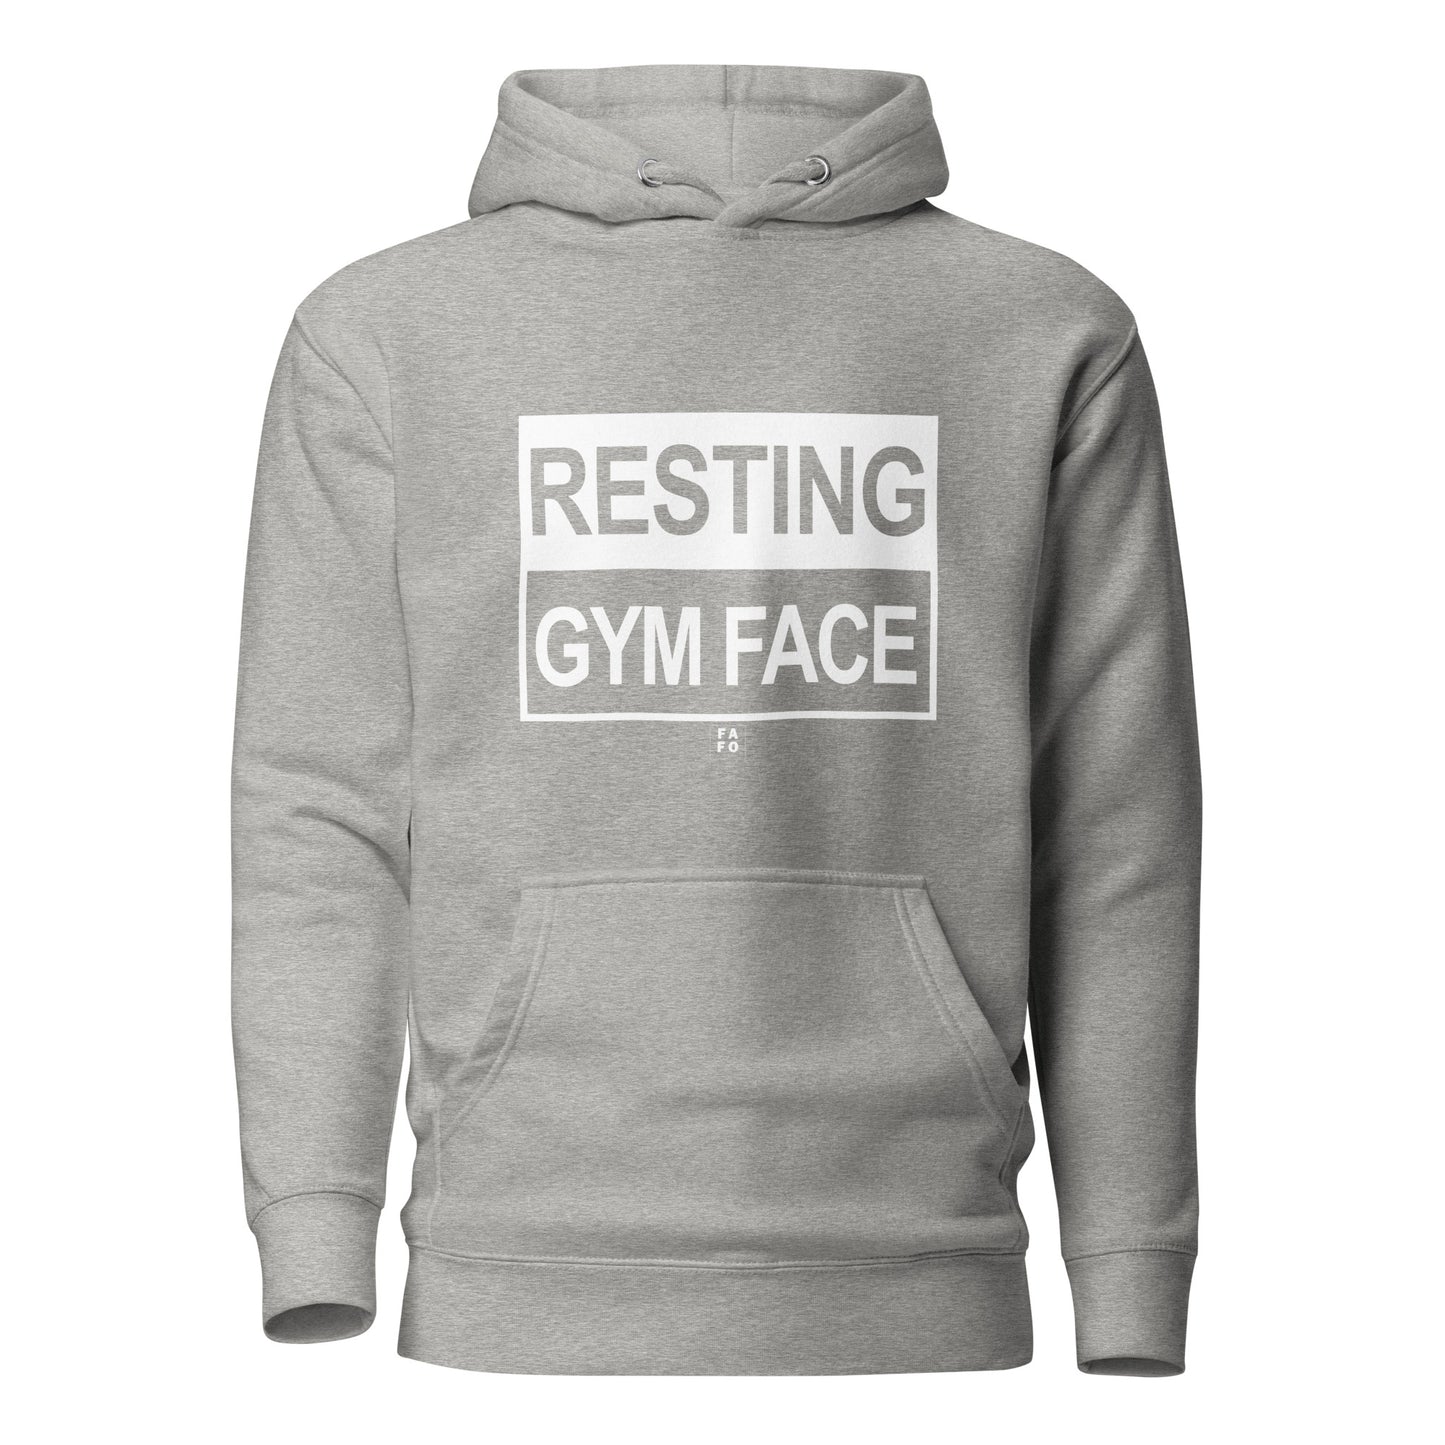 Women's Hoodie - Resting Gym Face - FAFO Sportswear